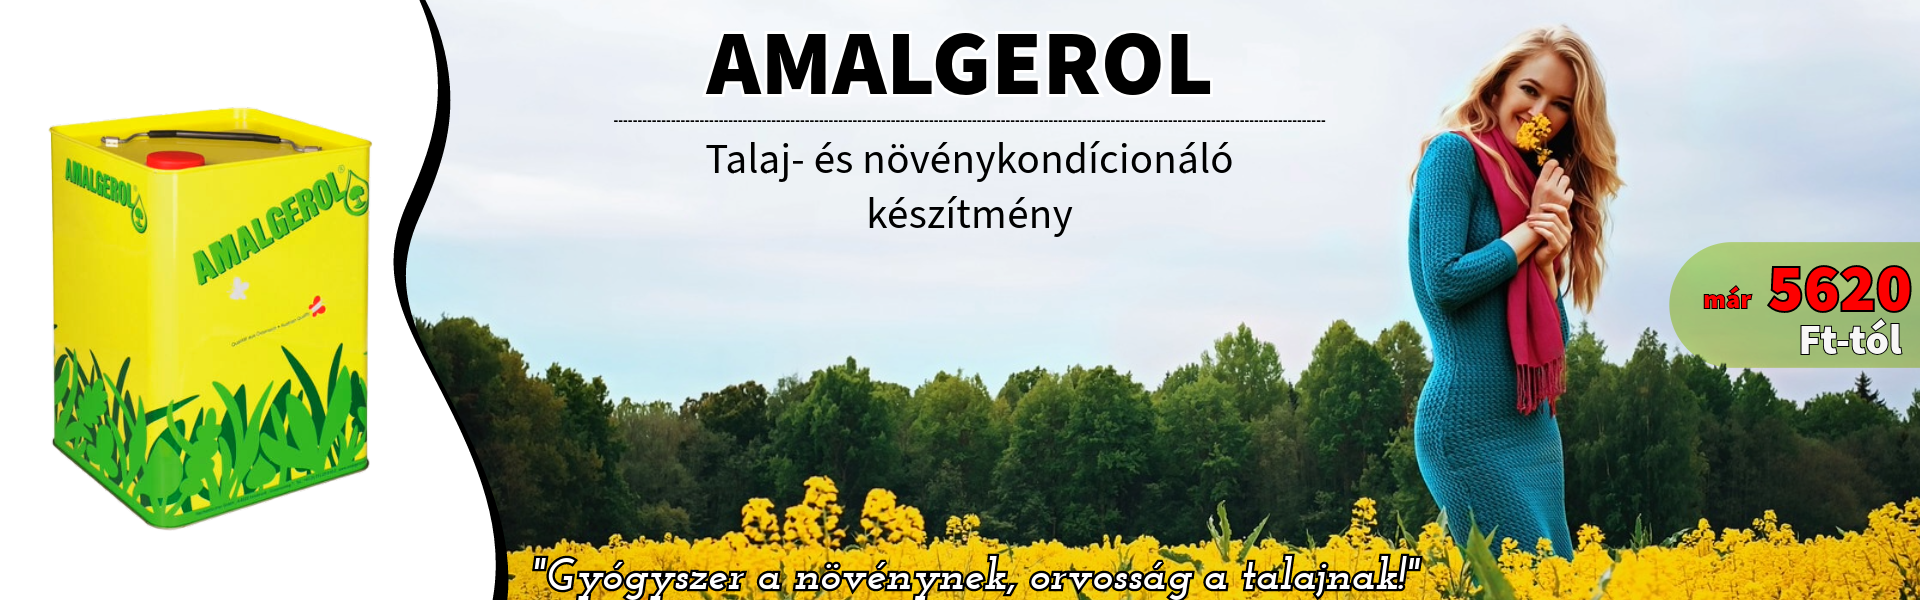 Amalgerol